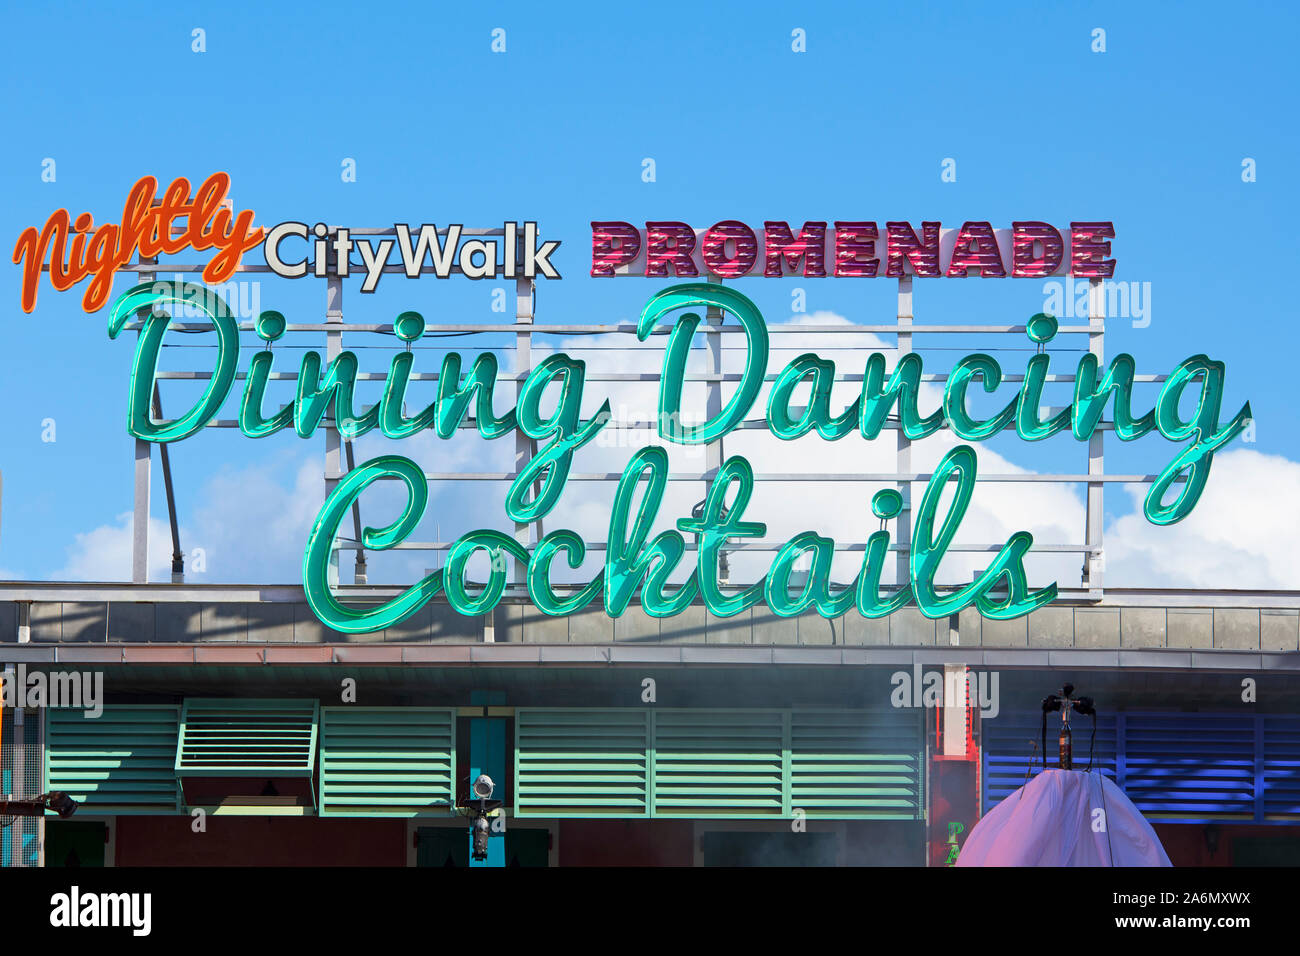 Ogni notte CityWalk Promenade, sala ballo Cocktail segno, CityWalk, Universal Studios, Orlando, Florida, Stati Uniti d'America Foto Stock